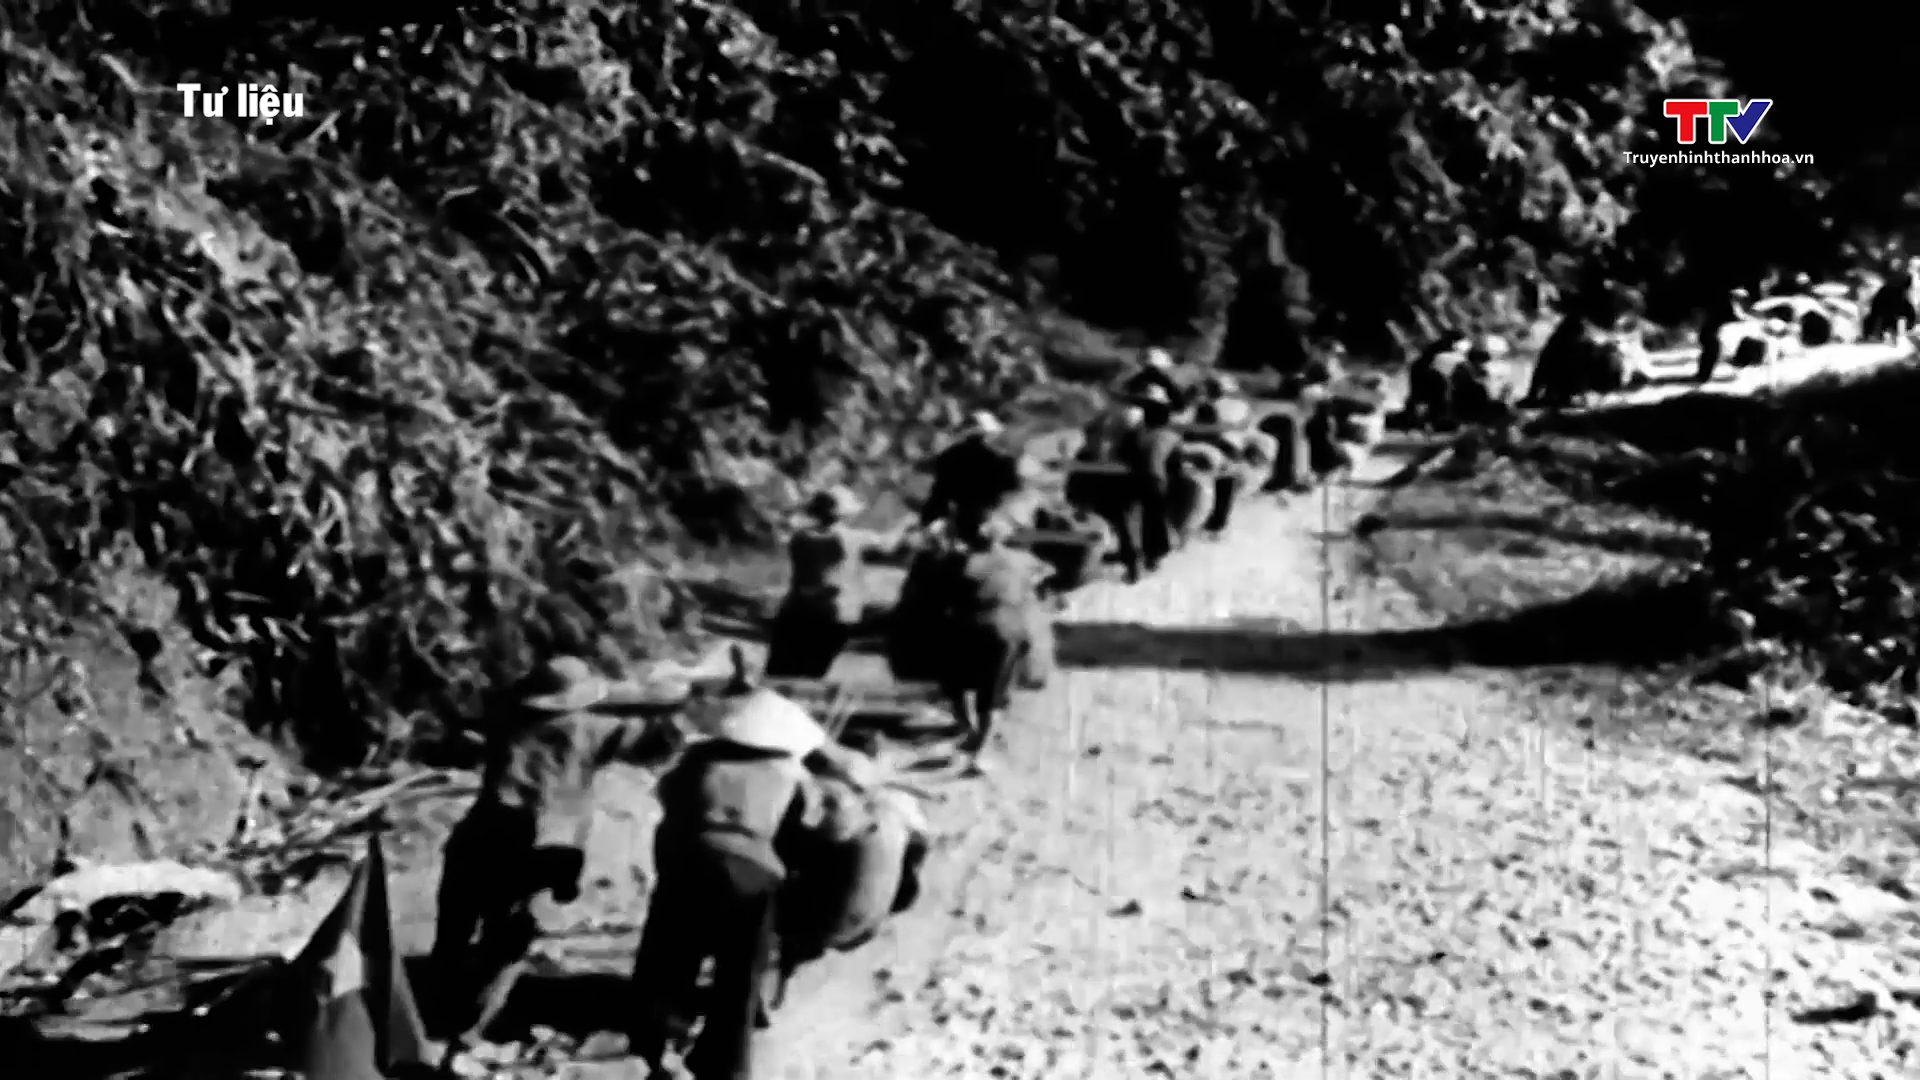 Dân công hoả tuyến và những kì tích anh hùng trong chiến dịch Điện Biên Phủ- Ảnh 3.